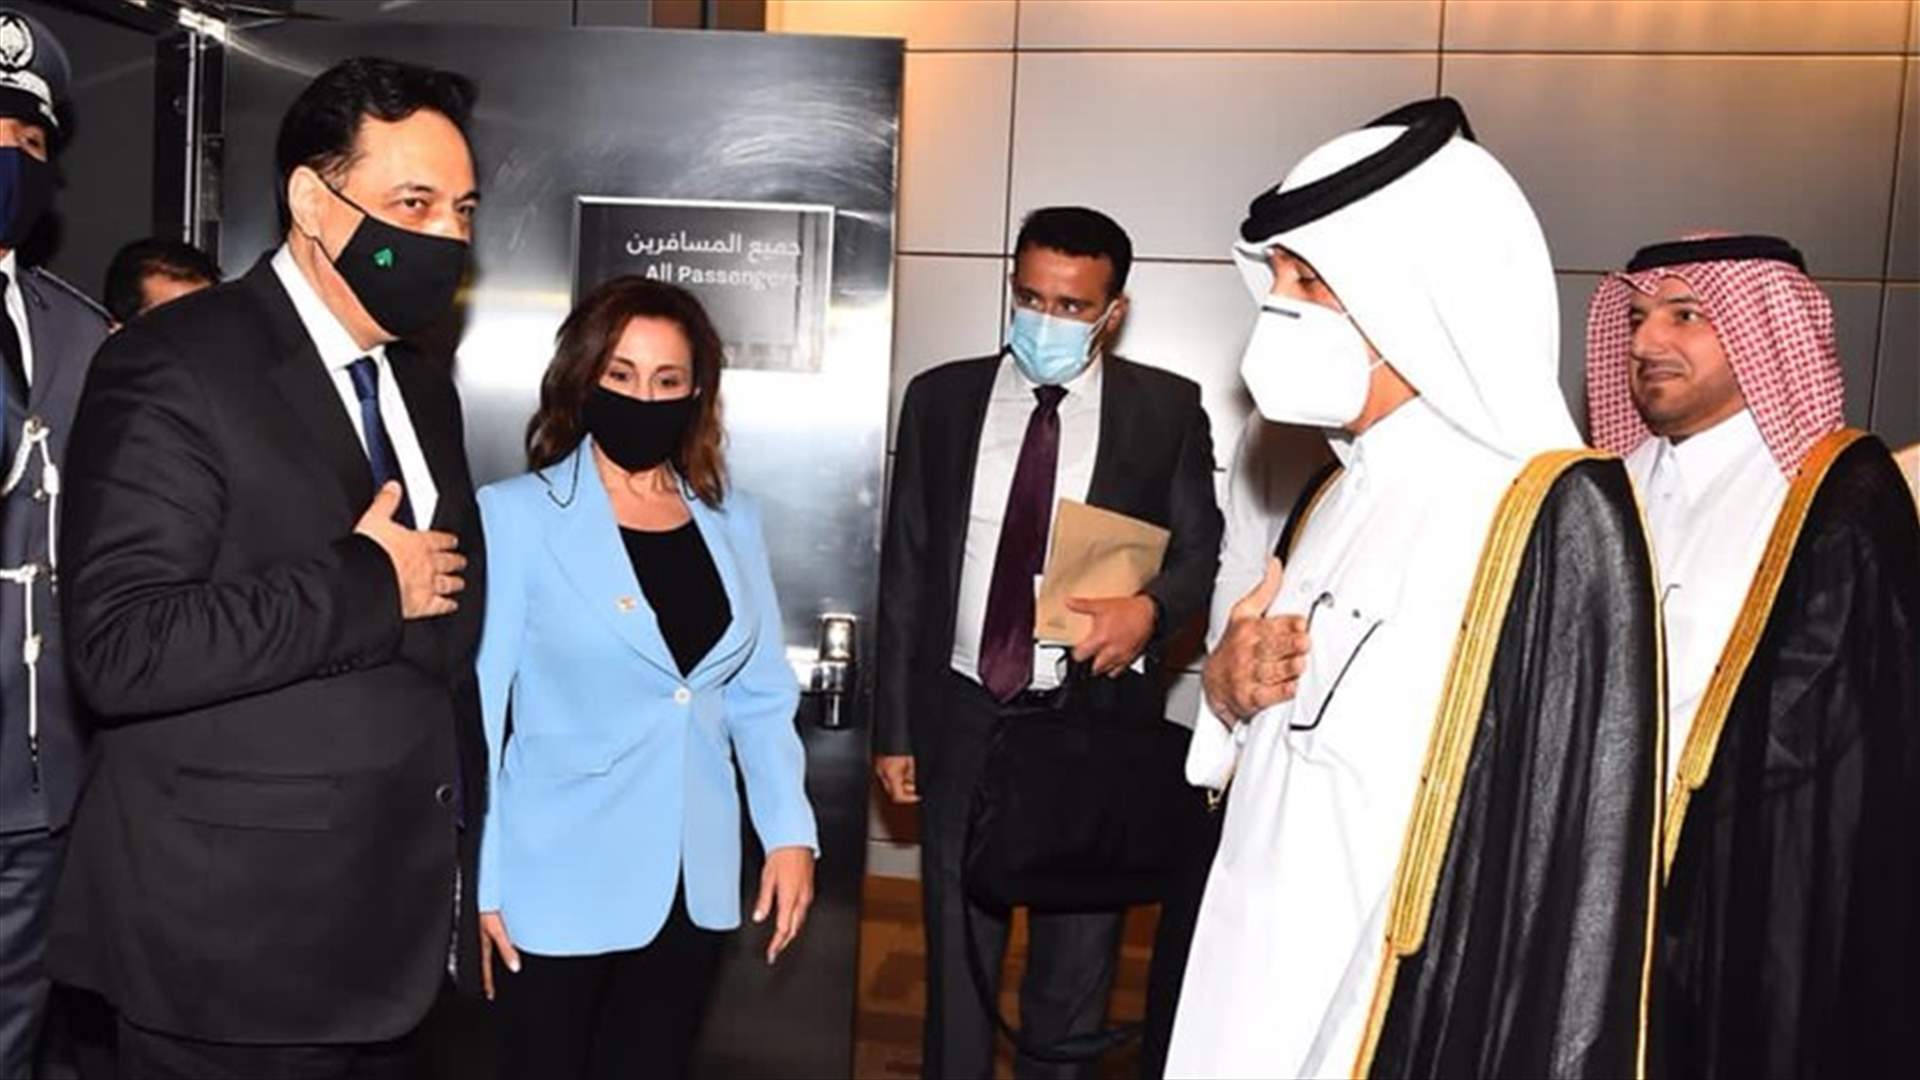 وصول الرئيس دياب إلى مطار حمد الدولي - الدوحة في إطار زيارته الرسمية إلى دولة قطر